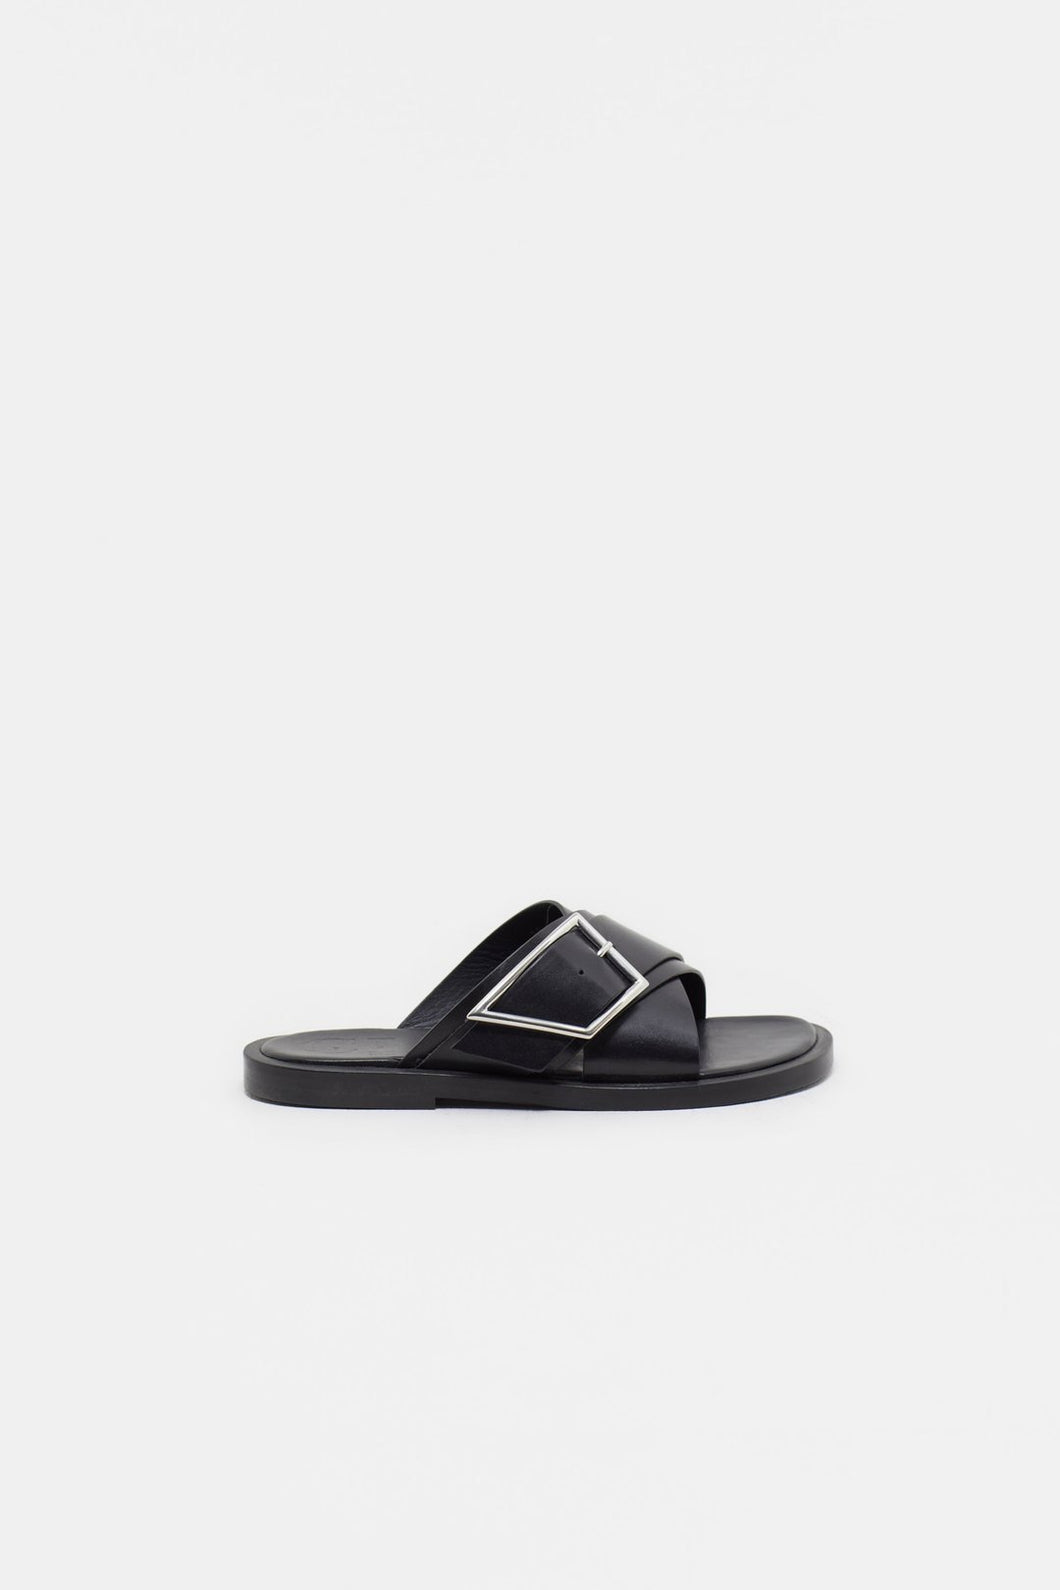 Closed Slipper Sandal C99507-882-22 Black